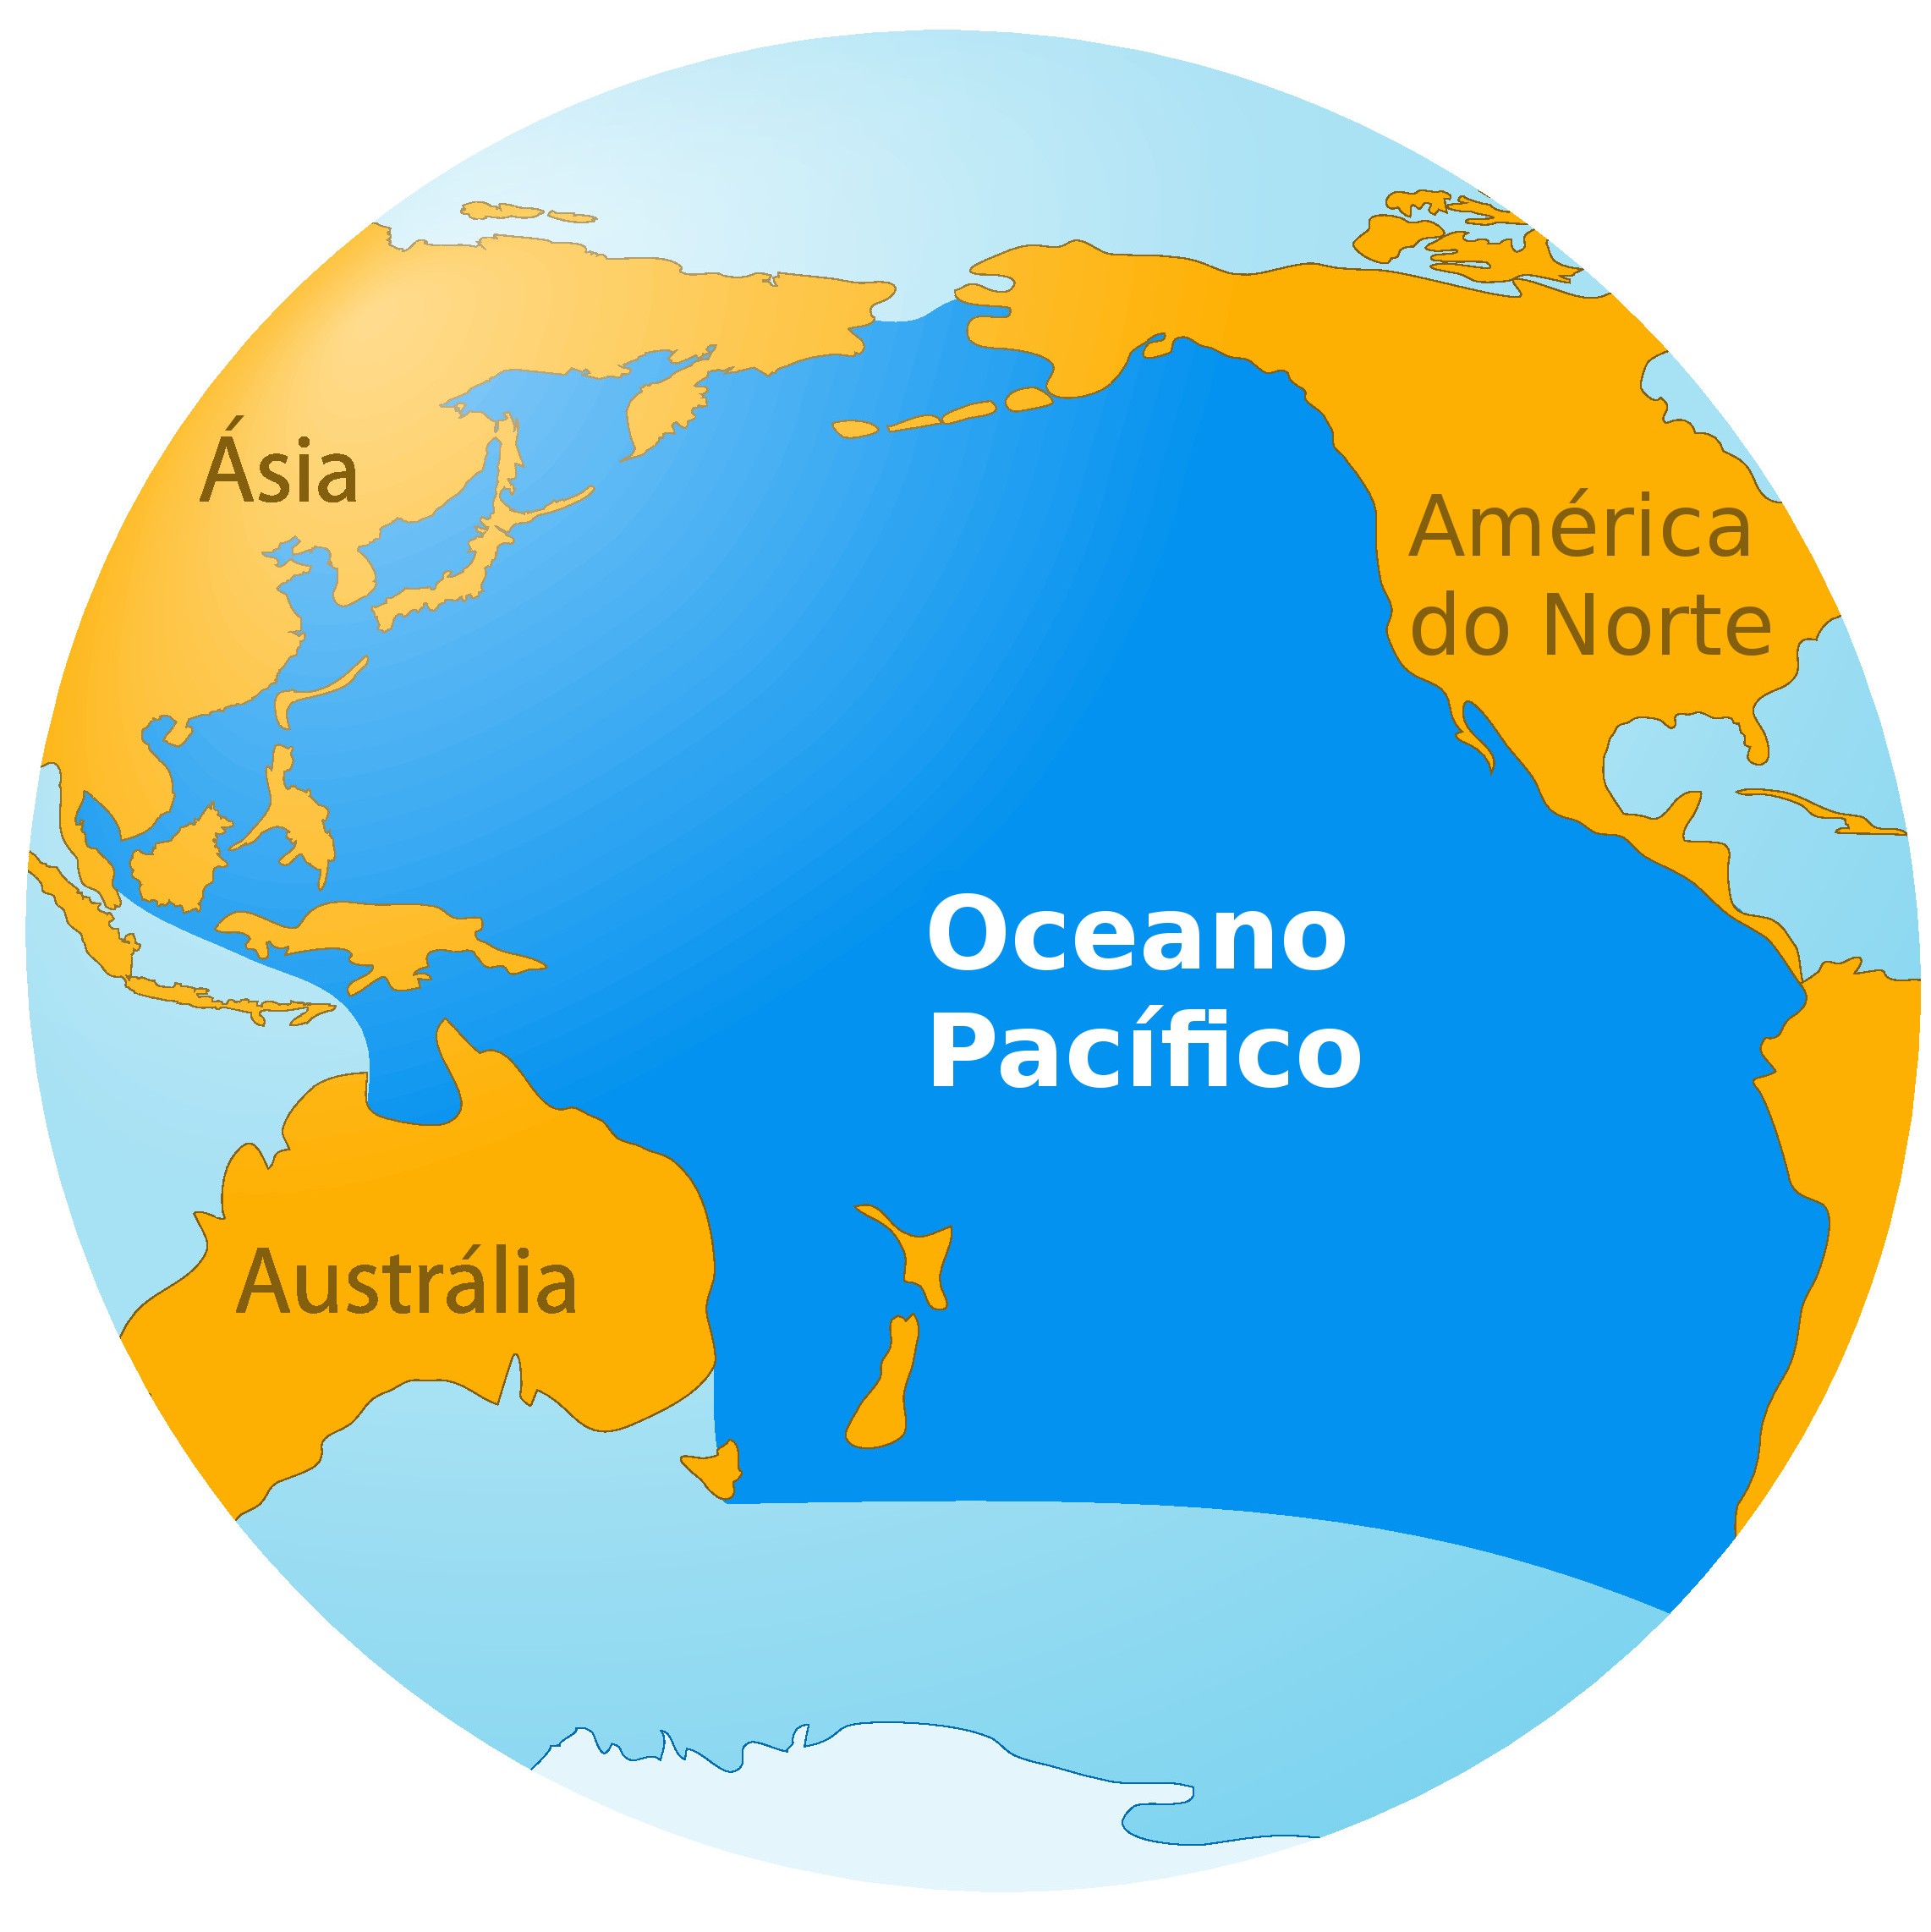 Mapa-múndi: continentes, países, mares, oceanos - Brasil Escola